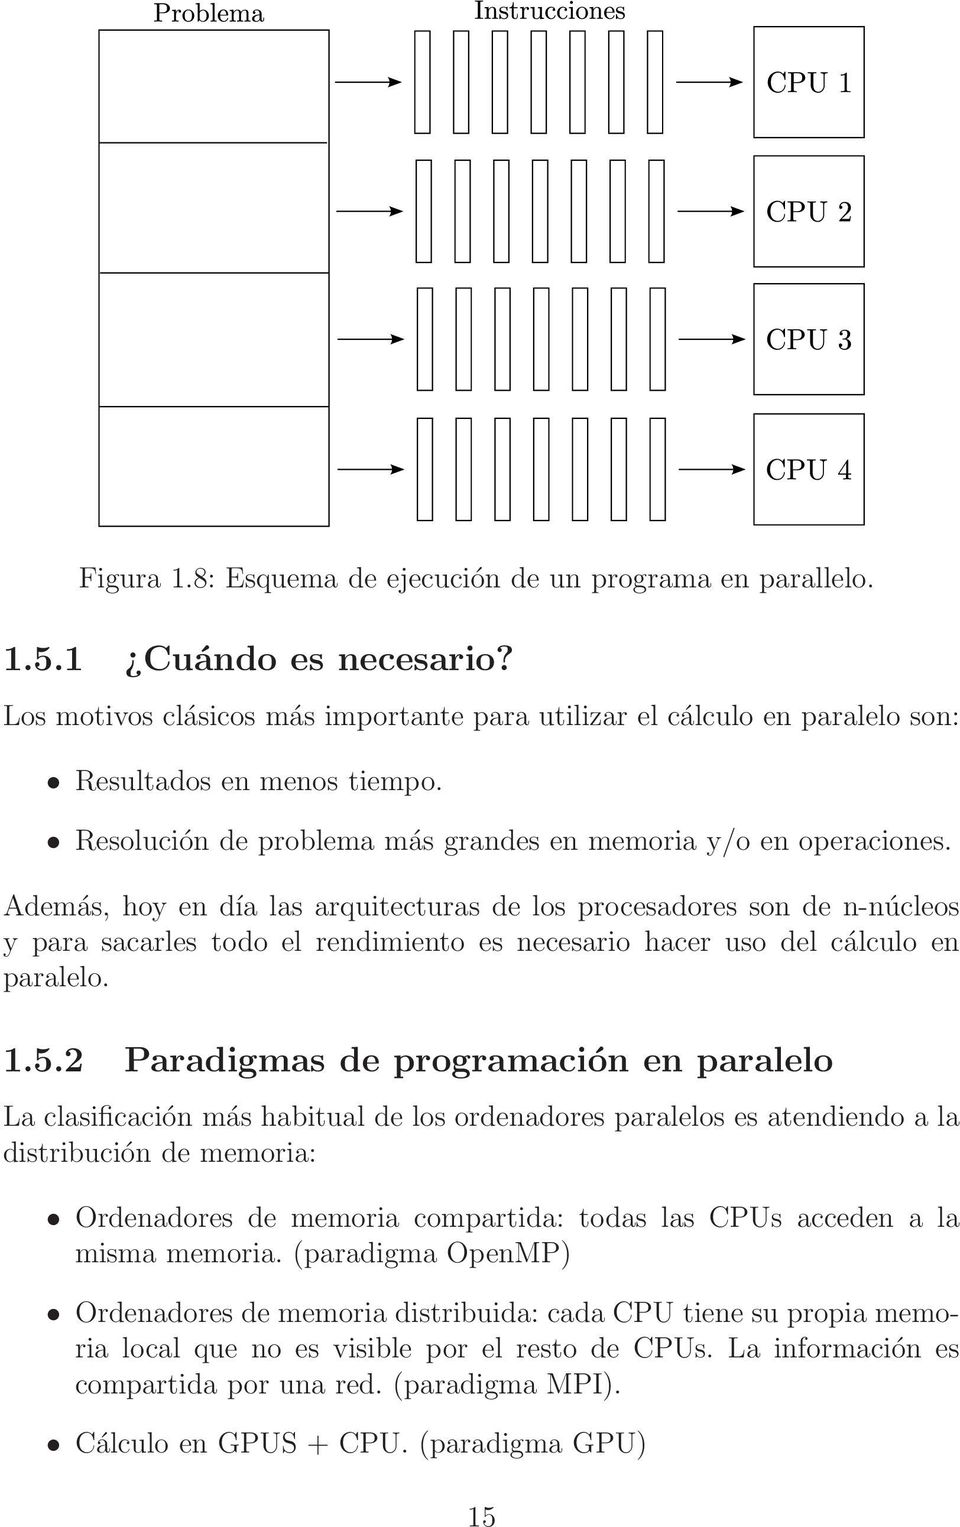 Además, hoy en día las arquitecturas de los procesadores son de n-núcleos y para sacarles todo el rendimiento es necesario hacer uso del cálculo en paralelo. 1.5.